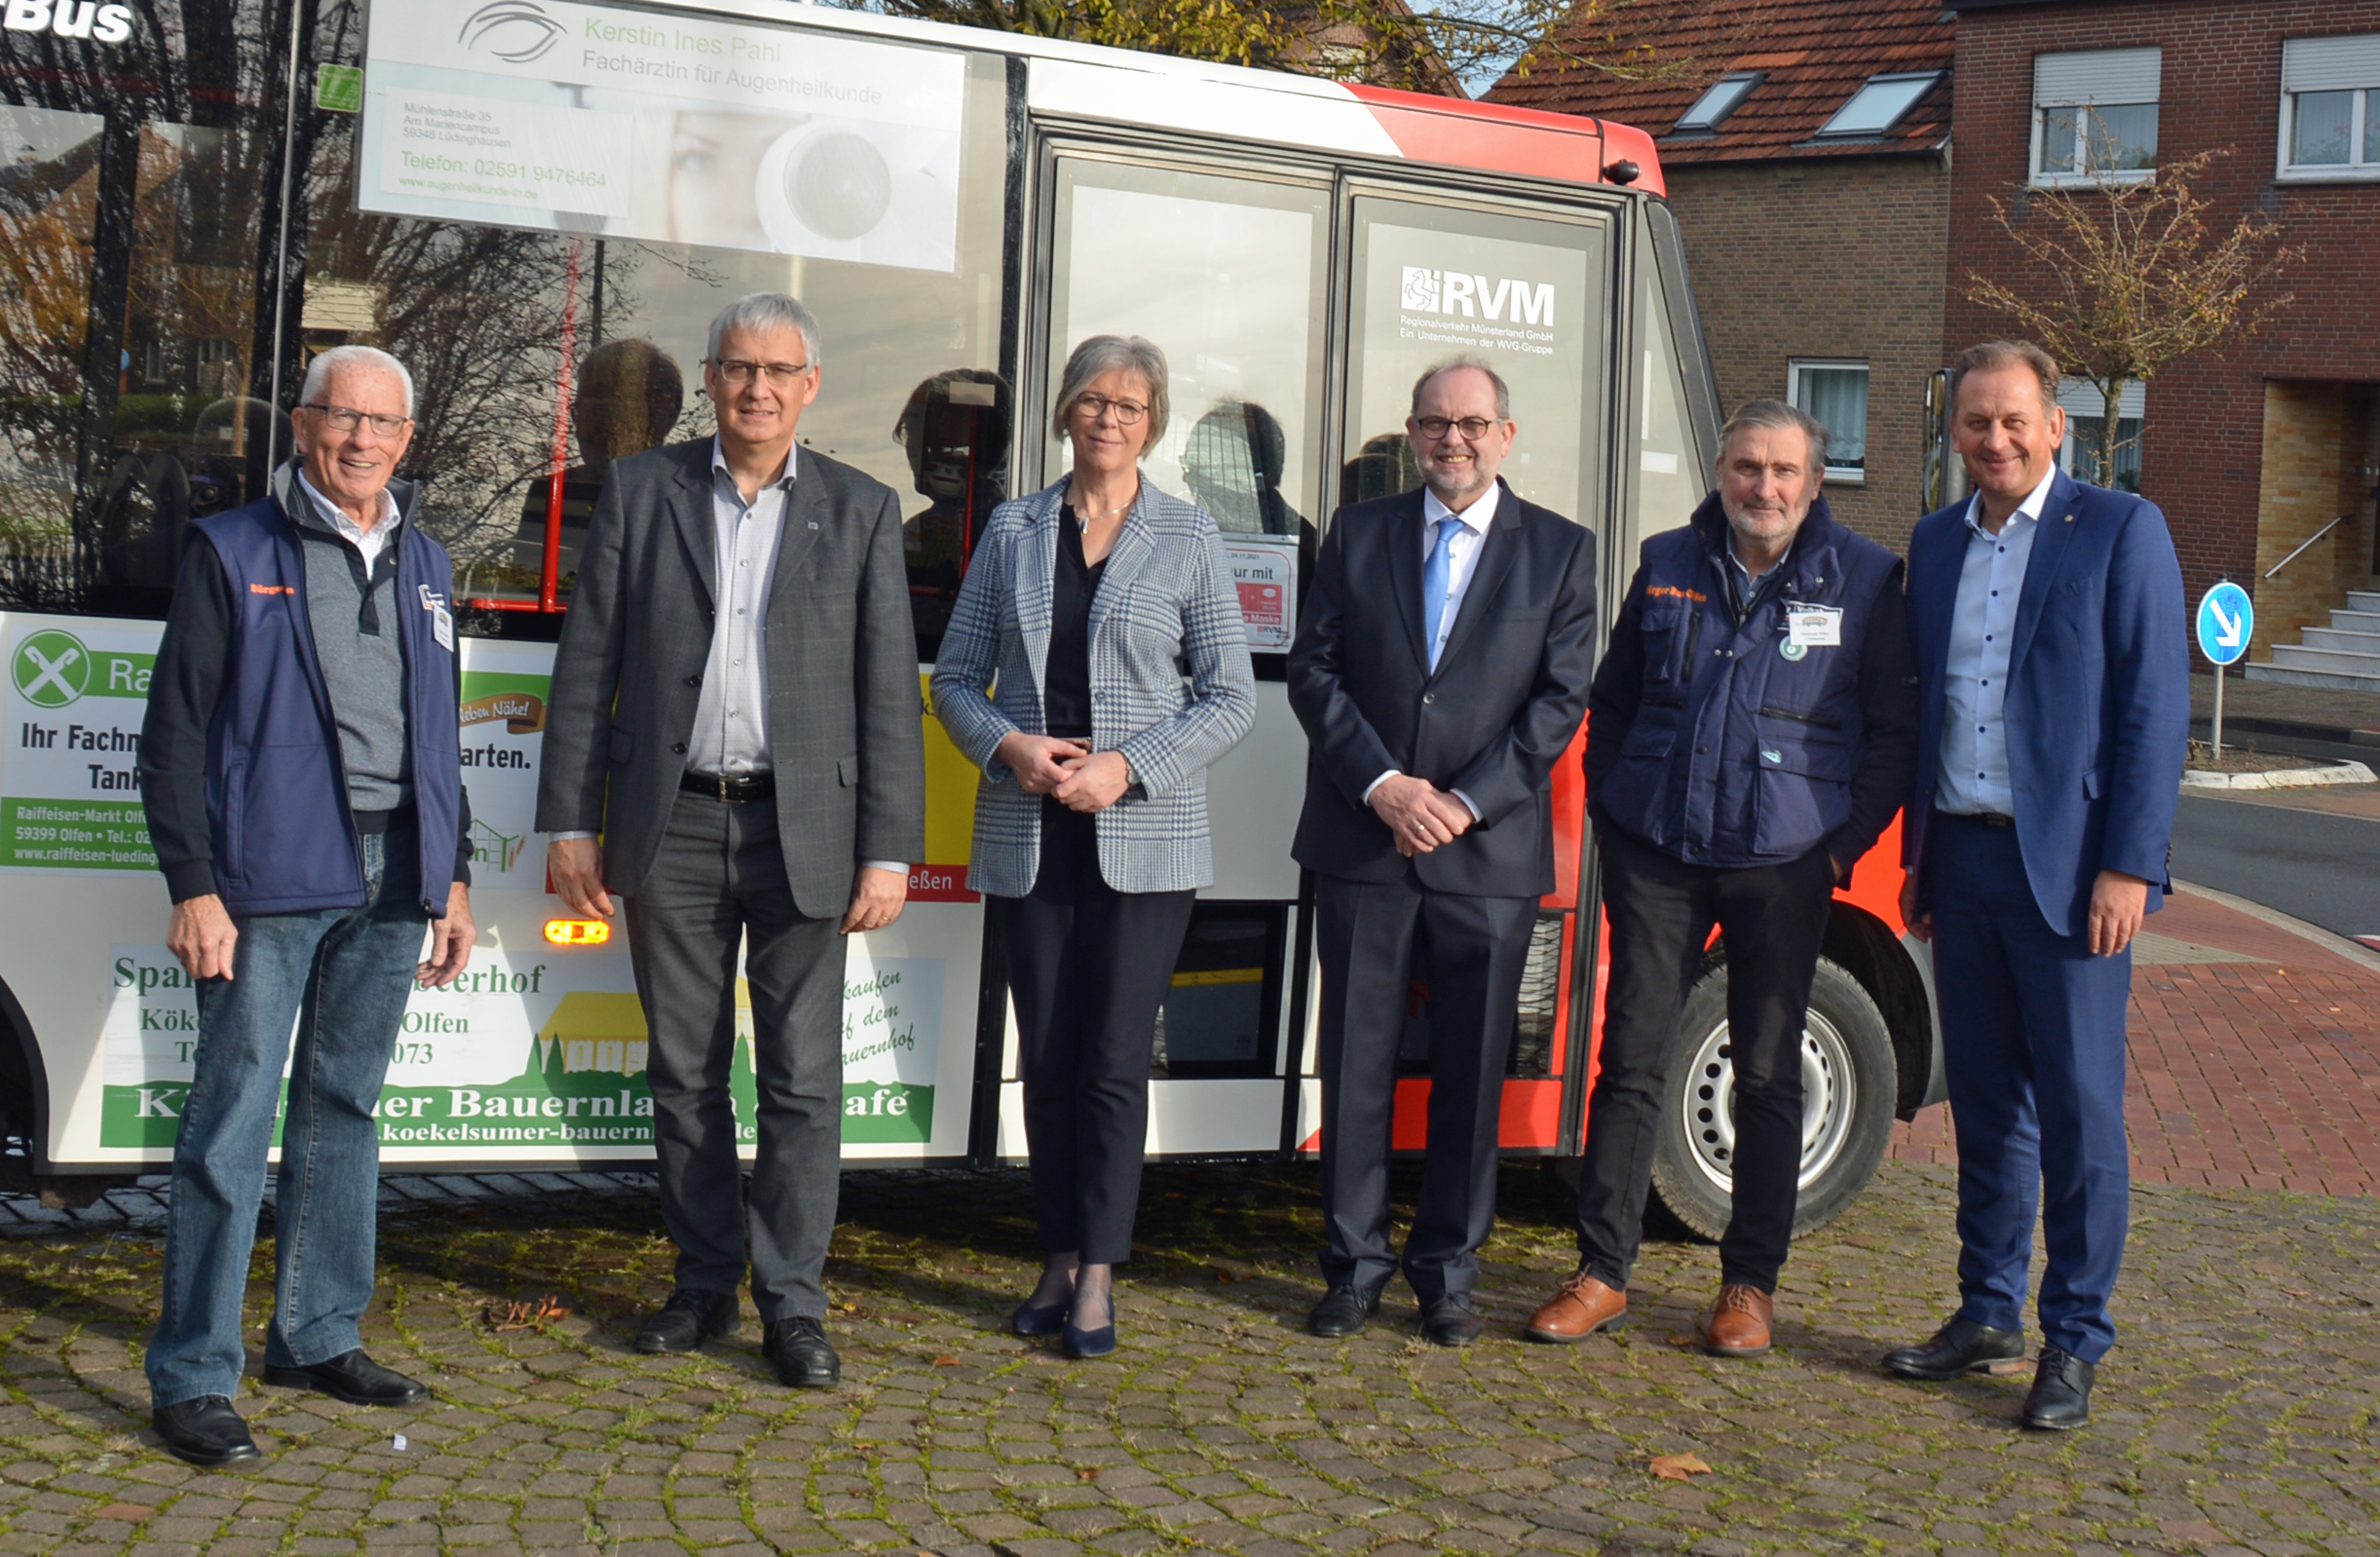 25 Jahre Bürgerbus in Olfen Olfen Bürgerbus-Verein 